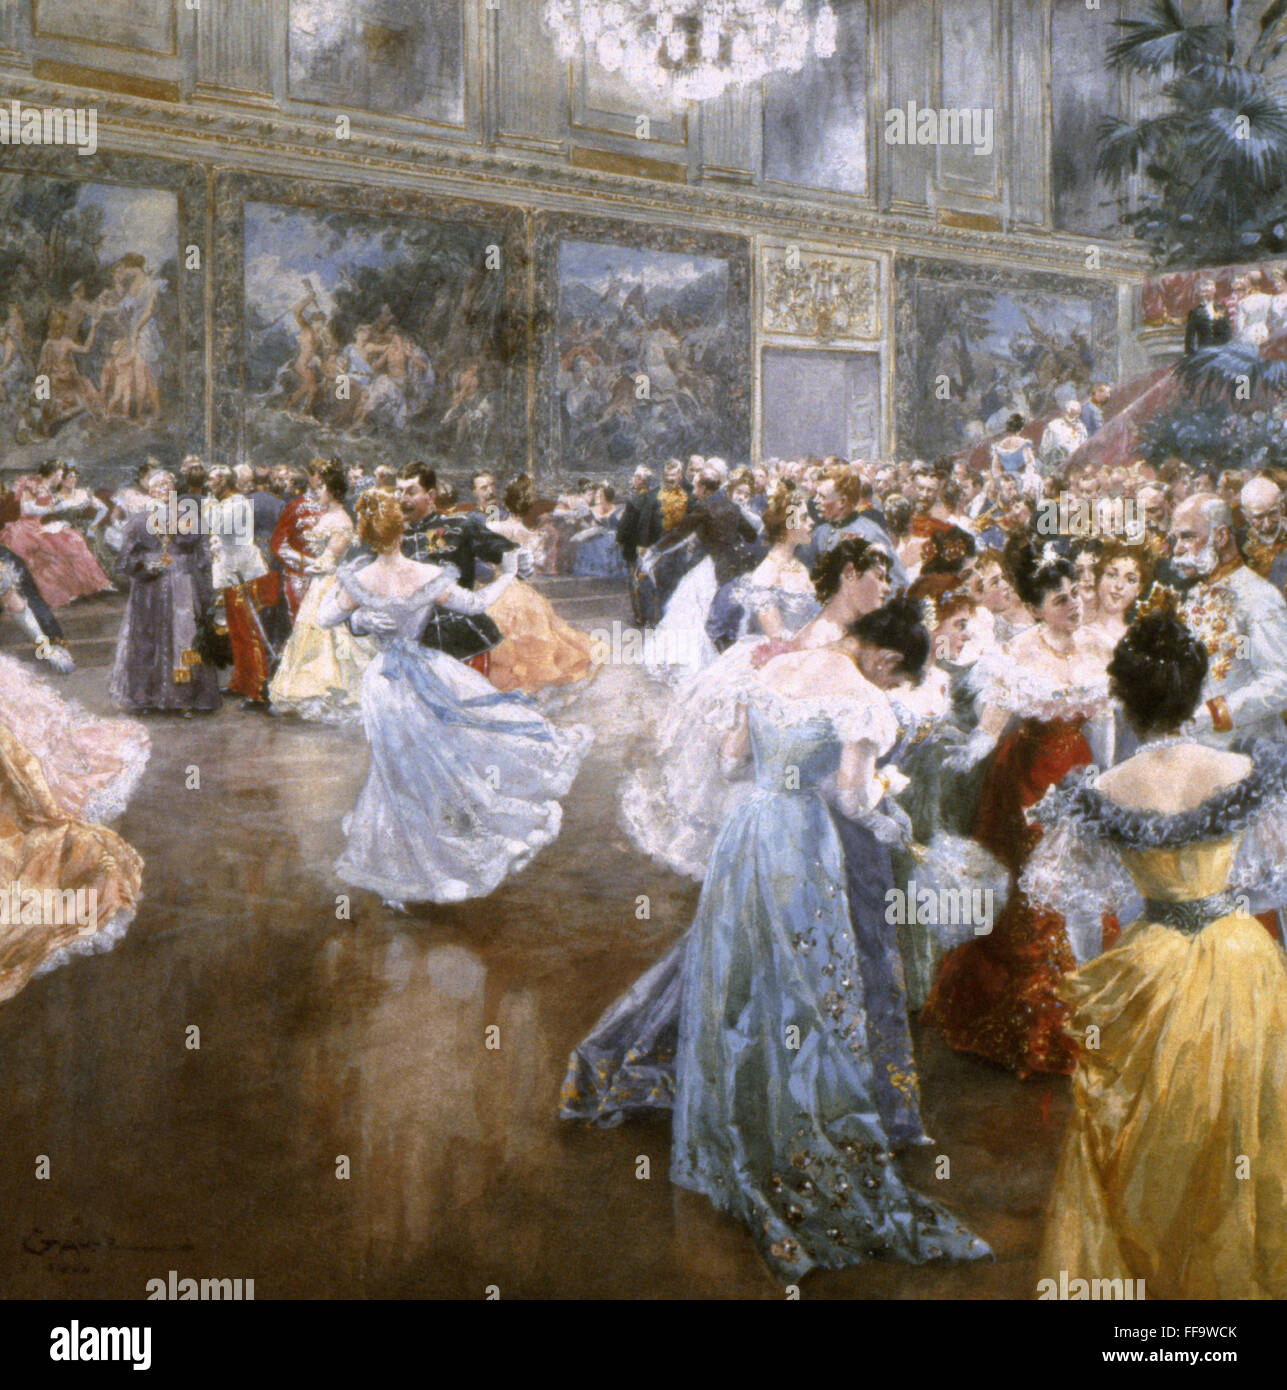 Танцы 19 века на балах